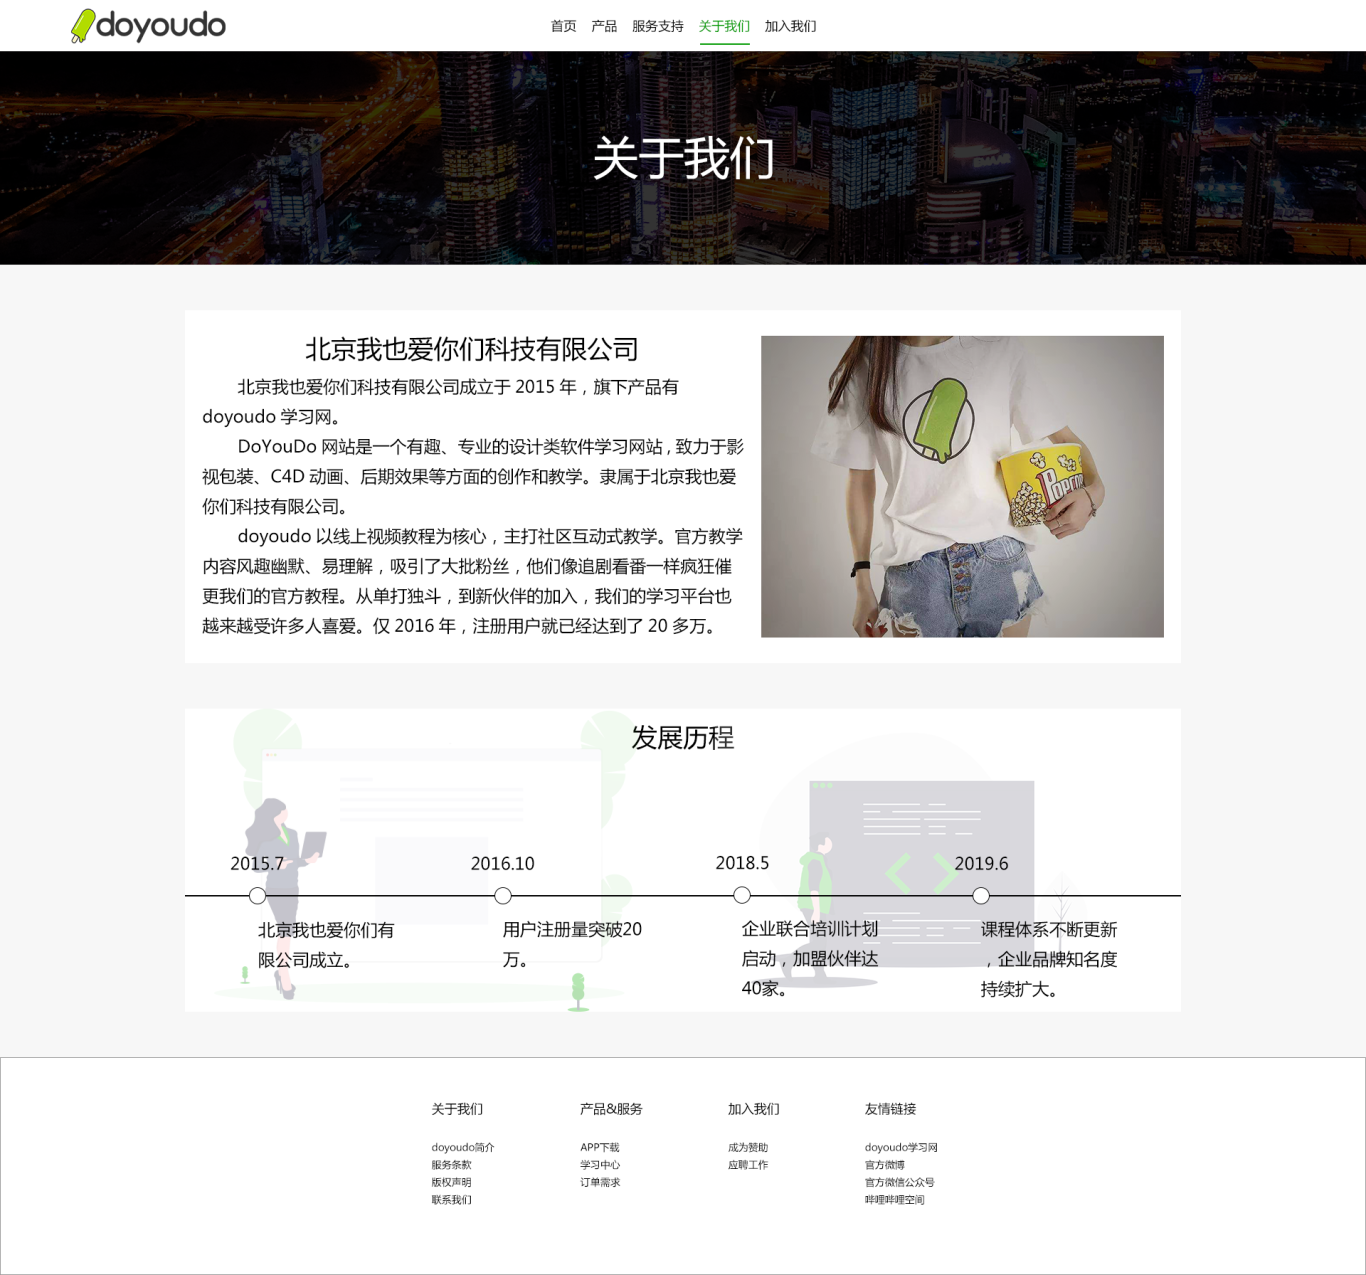 北京我也爱你们科技有限公司-doyoudo官网设计图5